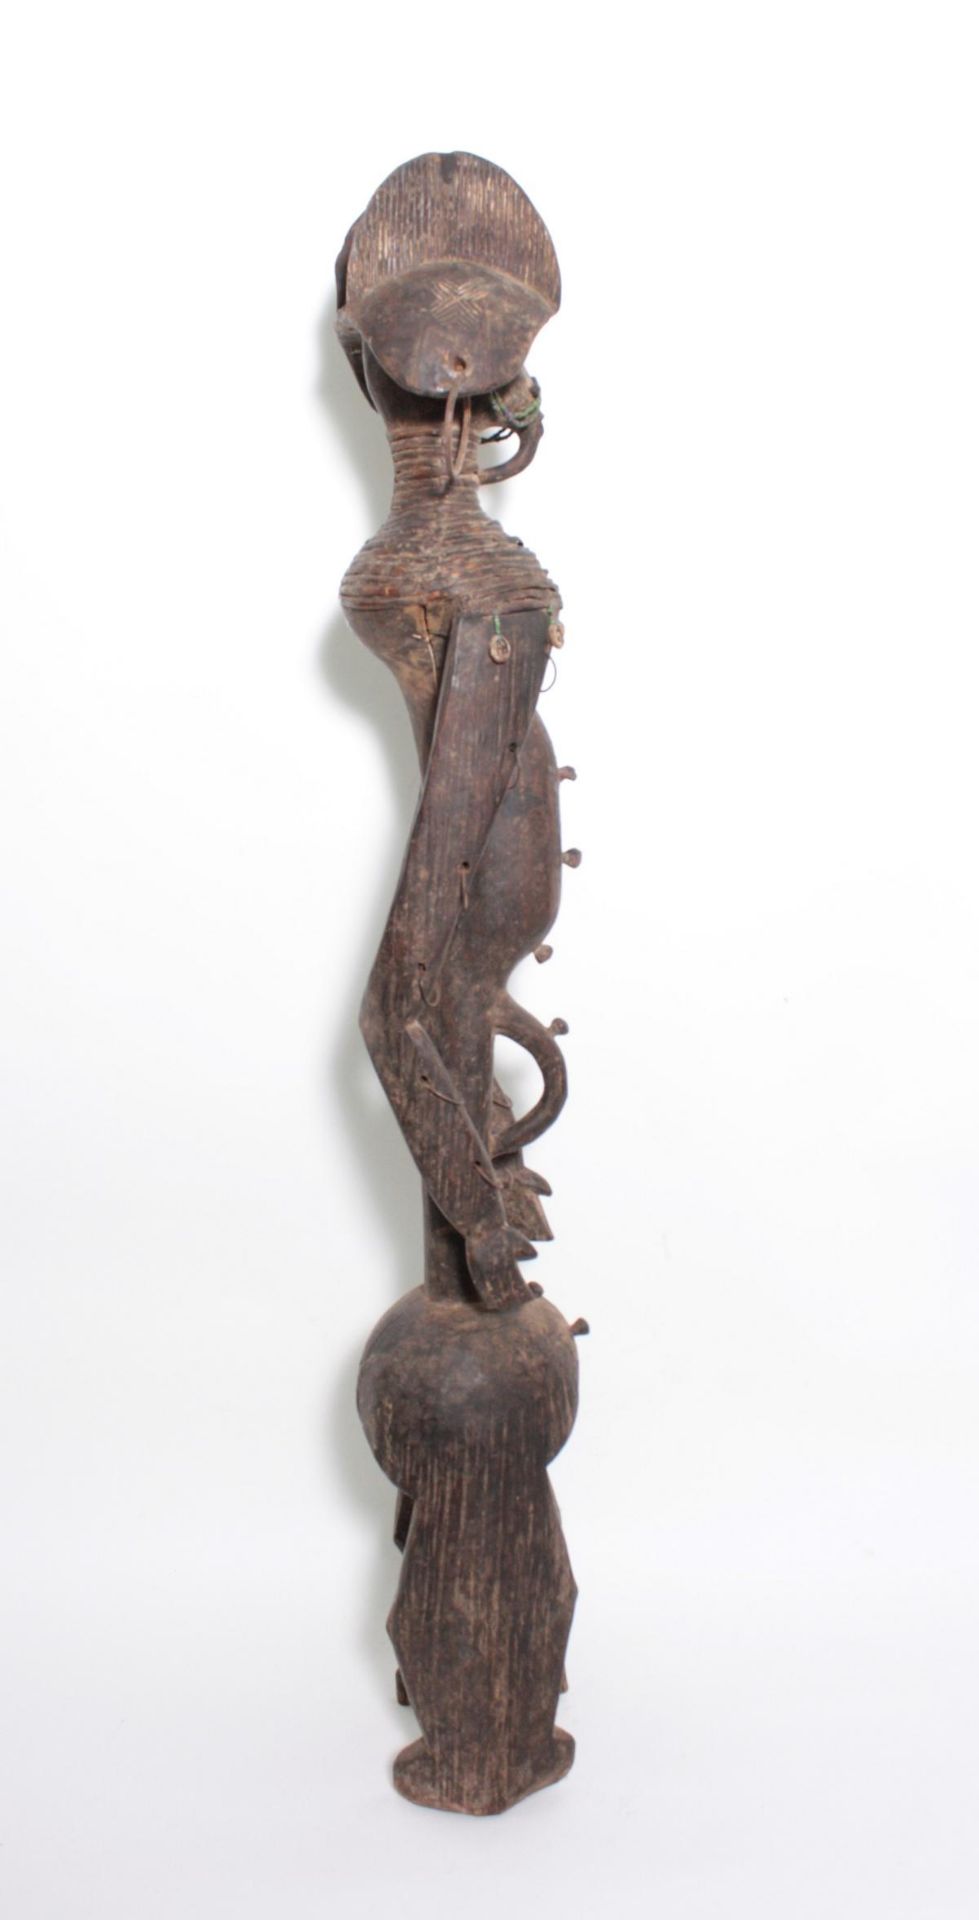 Ritualfigur der Mumuye, "Iagalagana", Nigeria. 1. Hälfte 20. Jh.Holz geschnitzt, dunkelbraune Patina - Bild 4 aus 15